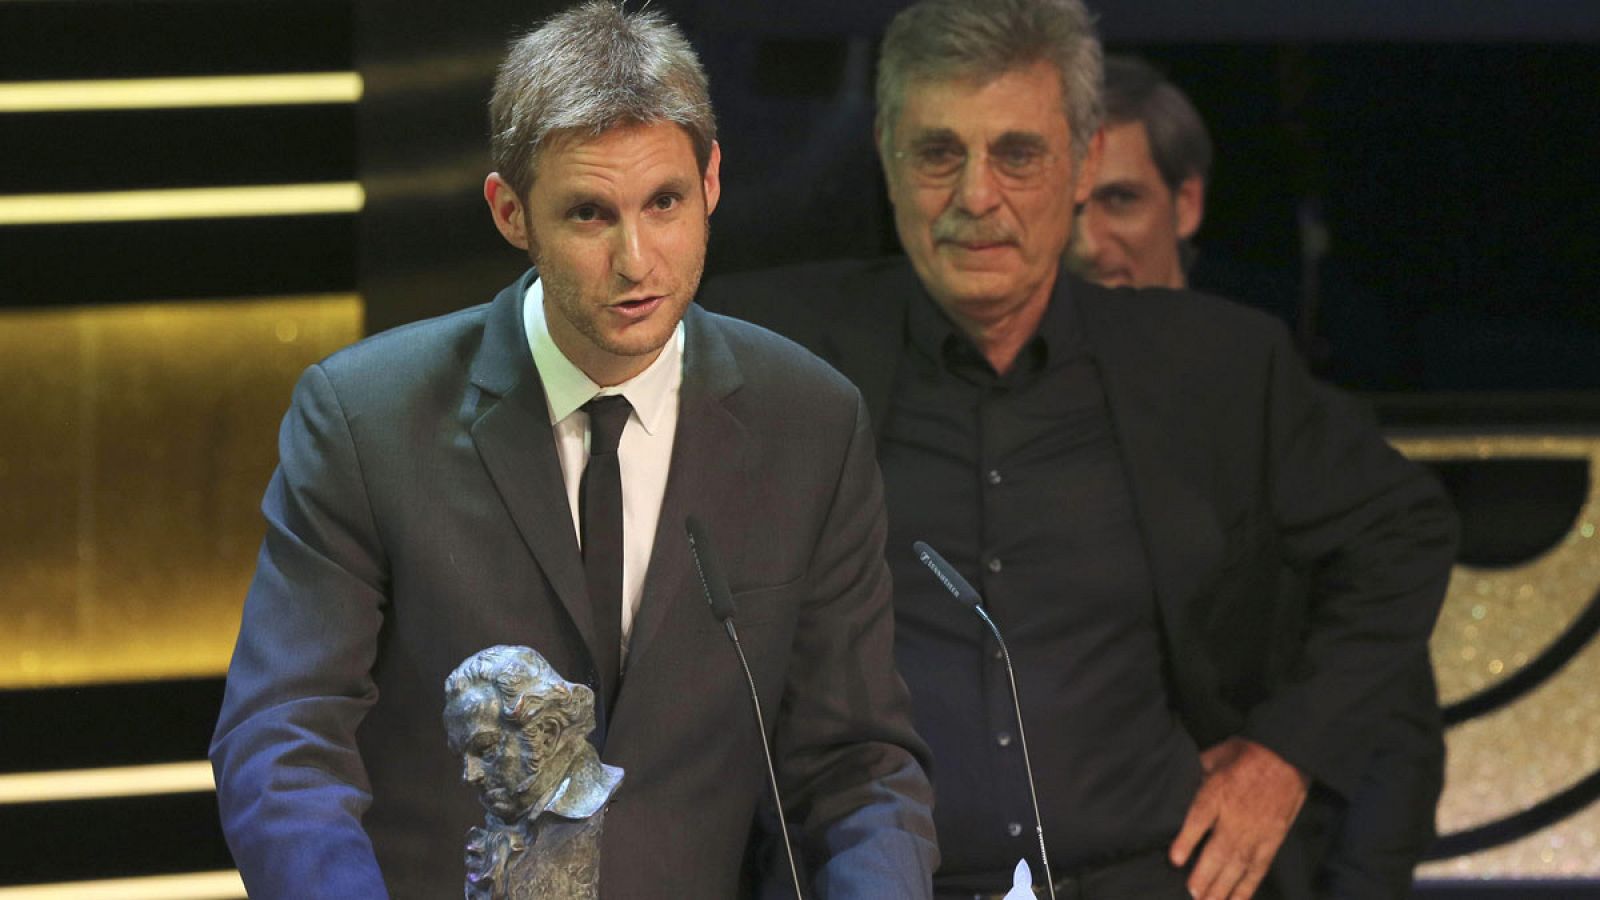 El director Damián Szifron recibe el Goya a la Mejor Película Iberoamericana, por "Relatos Salvajes", durante la gala de entrega de los premios Goya 2015